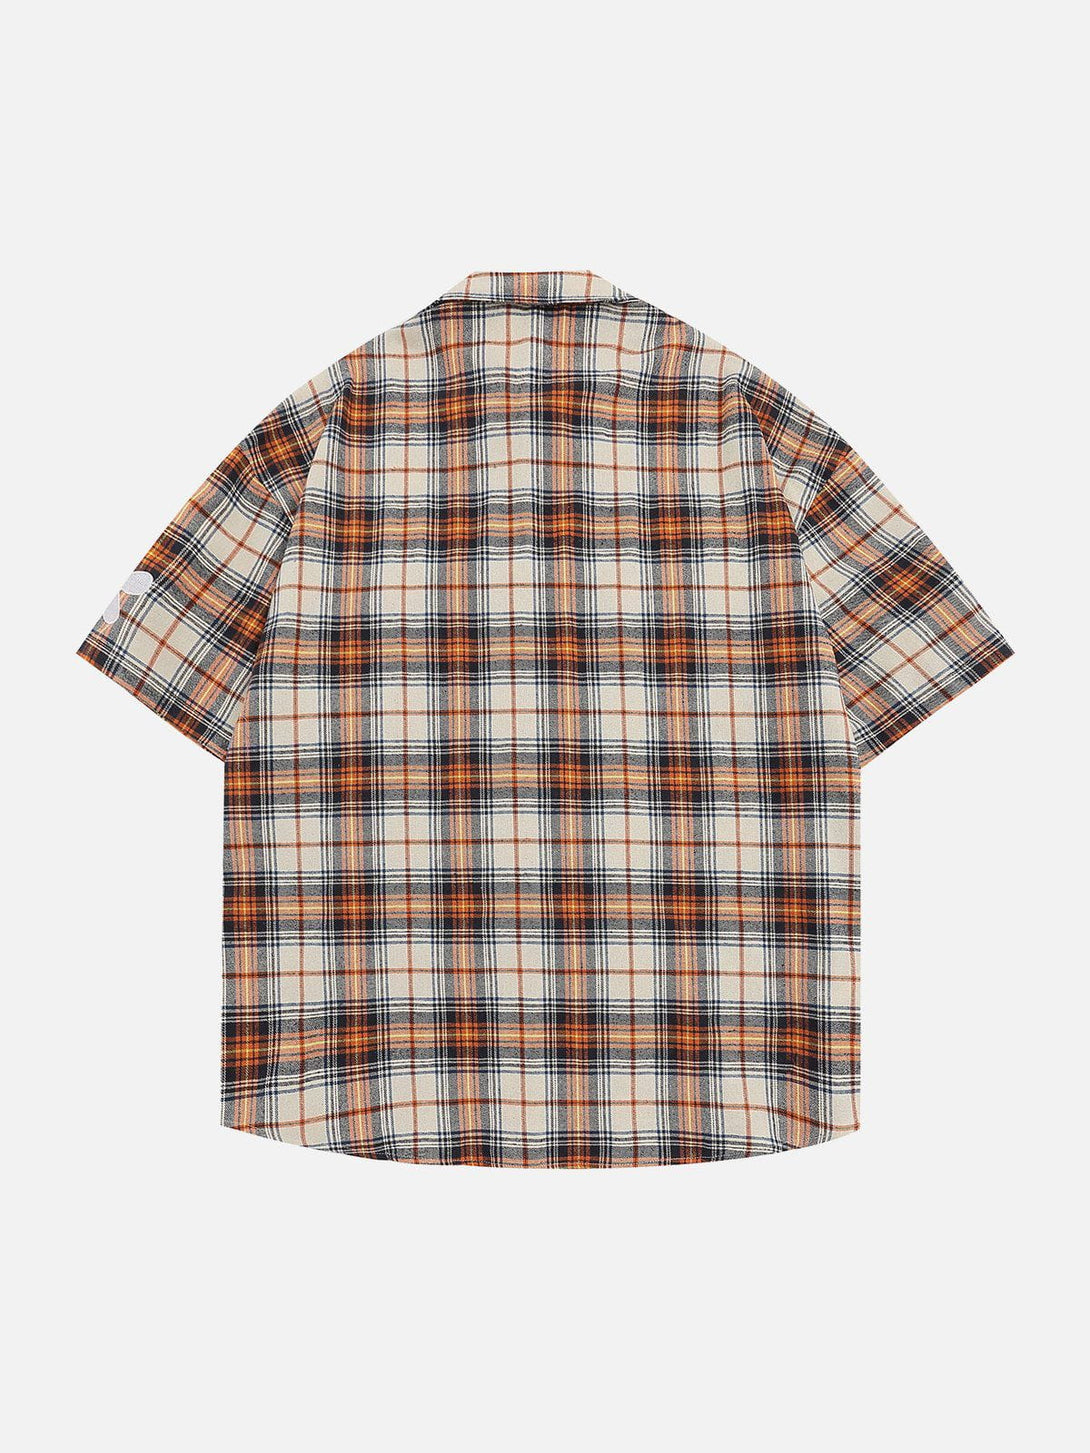 AlanBalen® - Plaid Short Sleeve Shirts AlanBalen